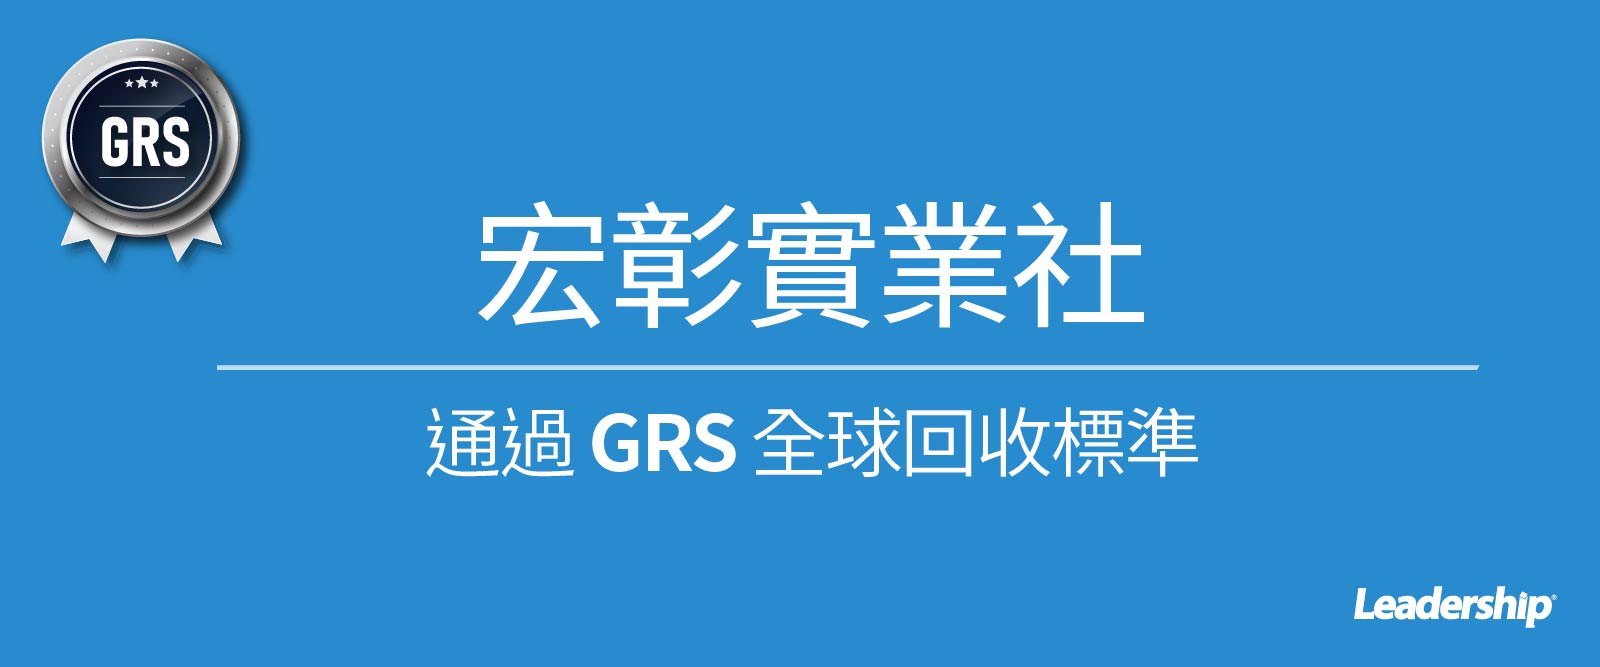 台灣整經廠 - 宏彰實業社通過 GRS 全球回收標準